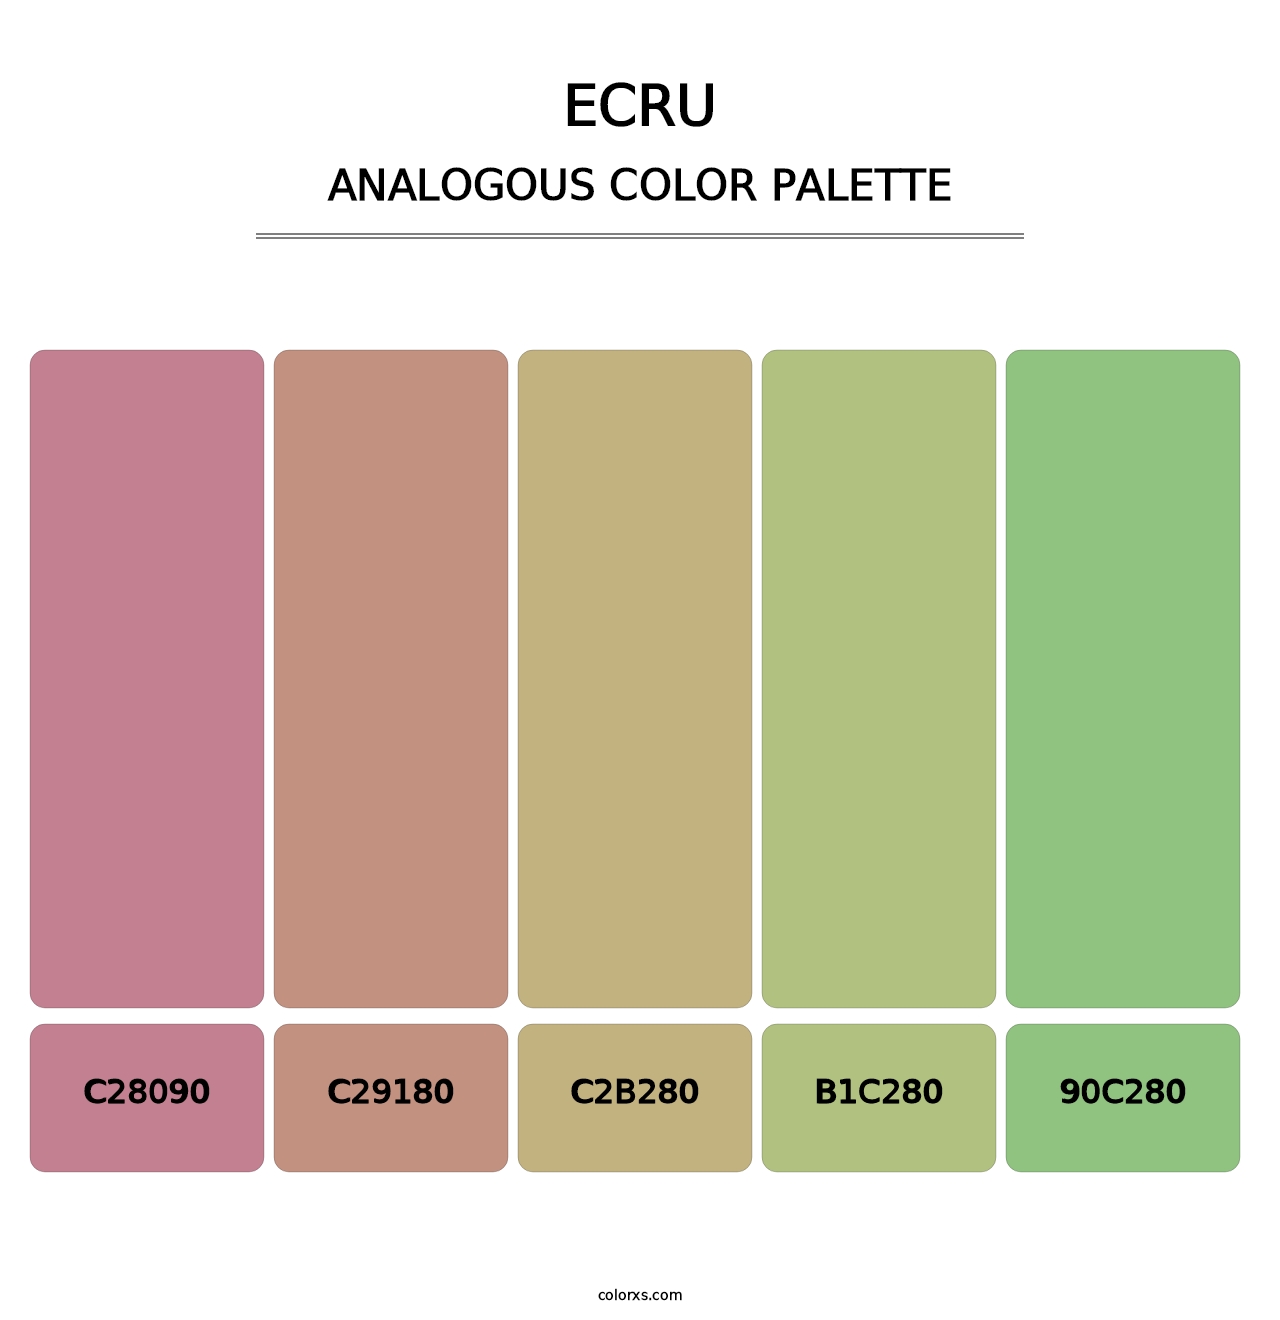 Ecru - Analogous Color Palette